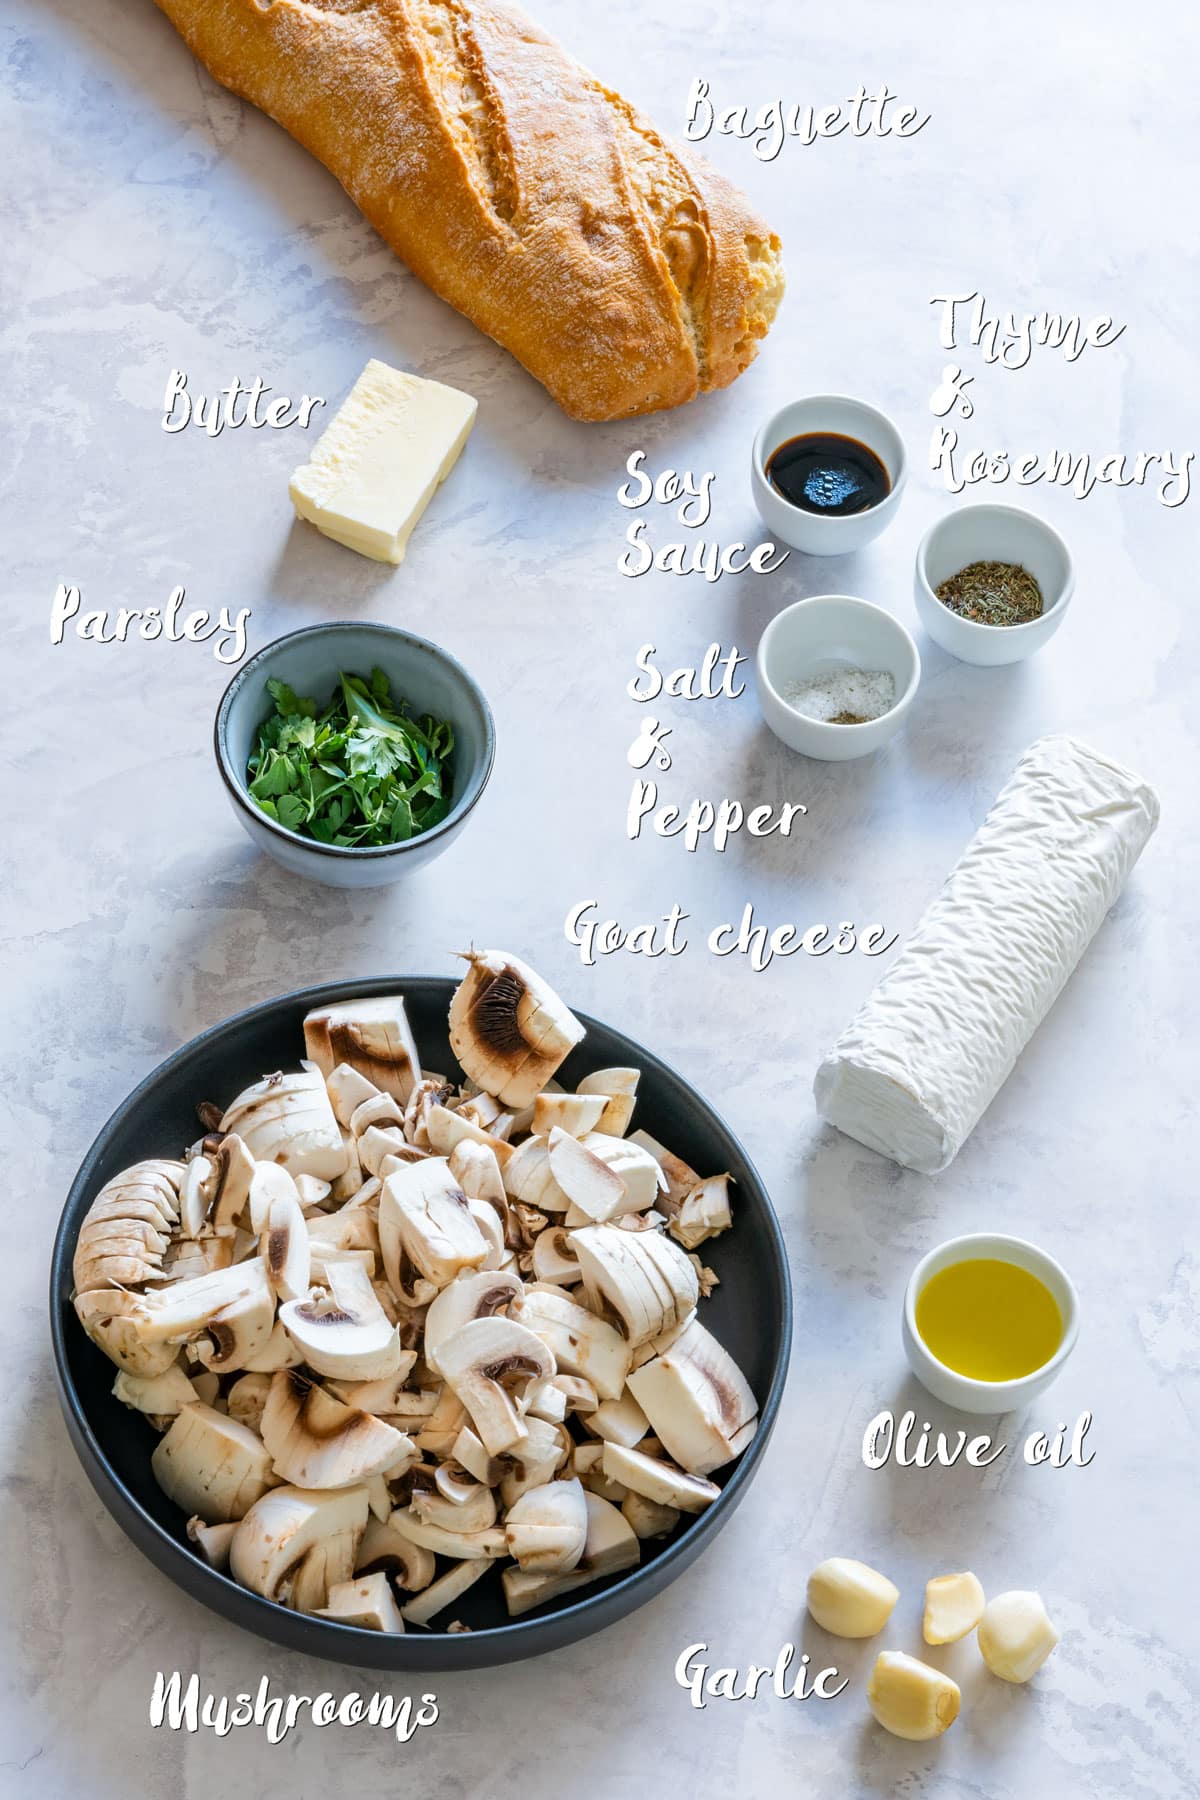 Ingredients for mushroom crostini: mushrooms, baguette, goat cheese, garlic and herbs.